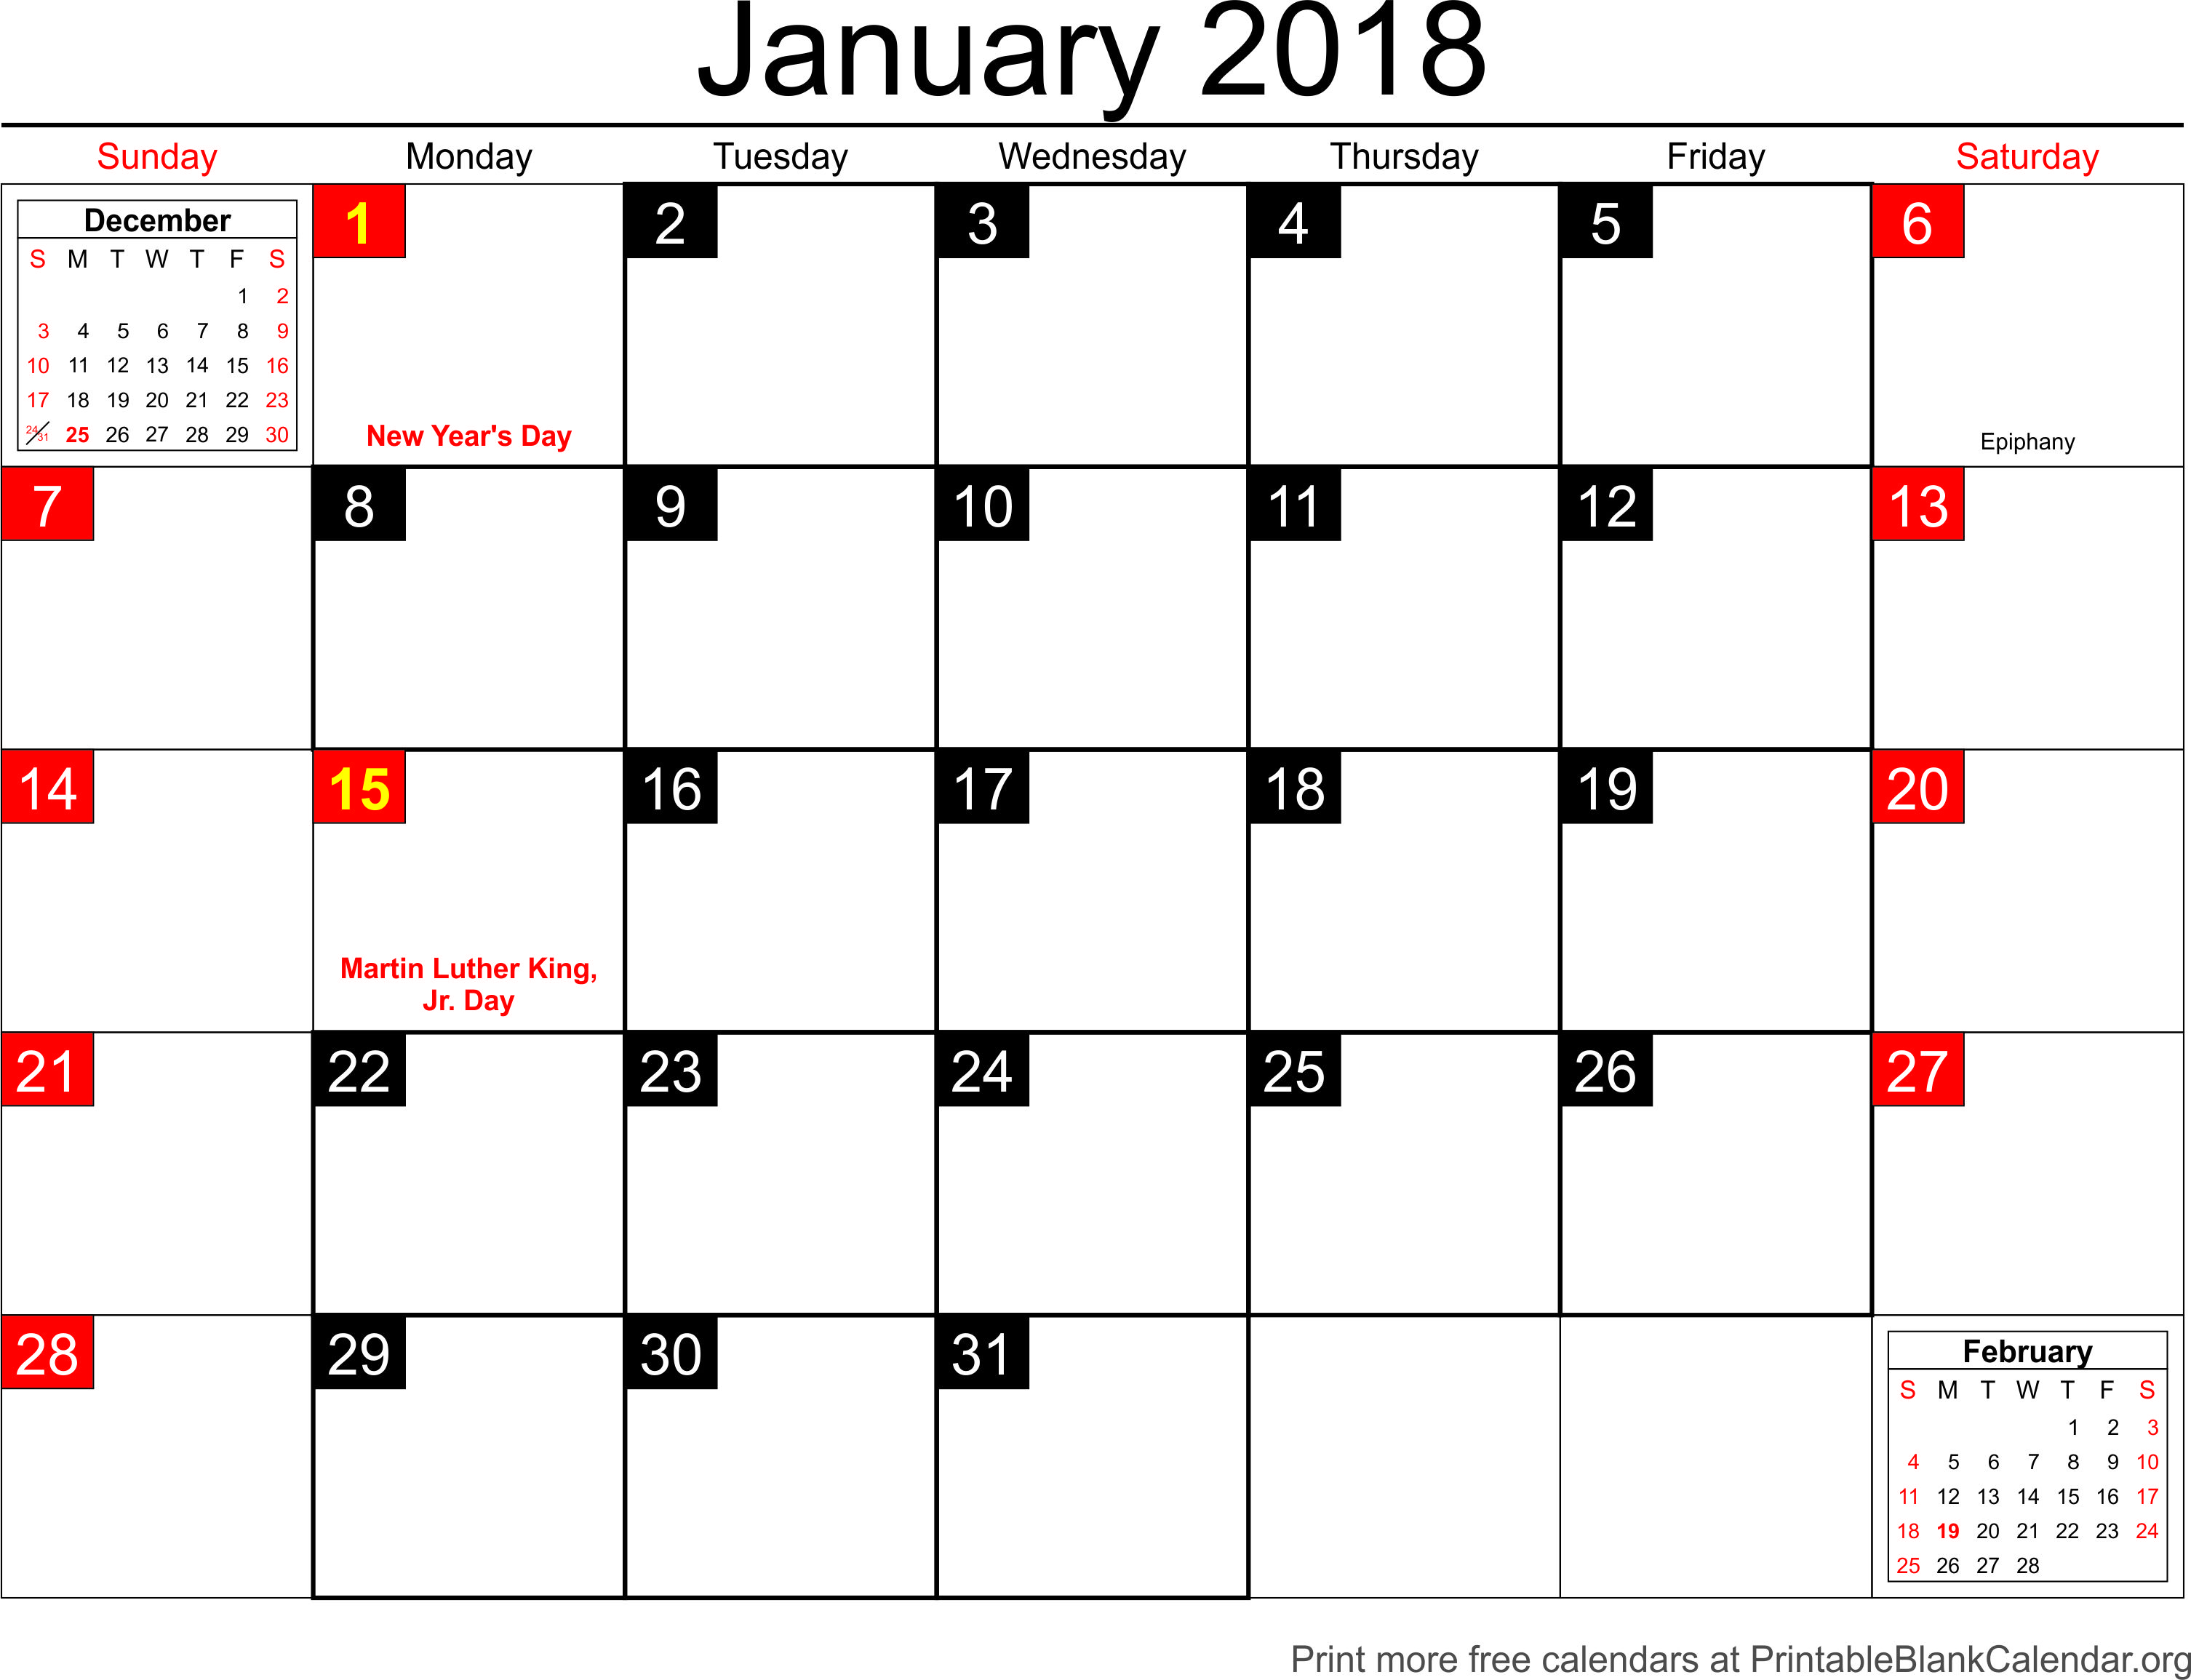 January 2018 Calendar Template January 2018 Calendar Template Pxcgyq